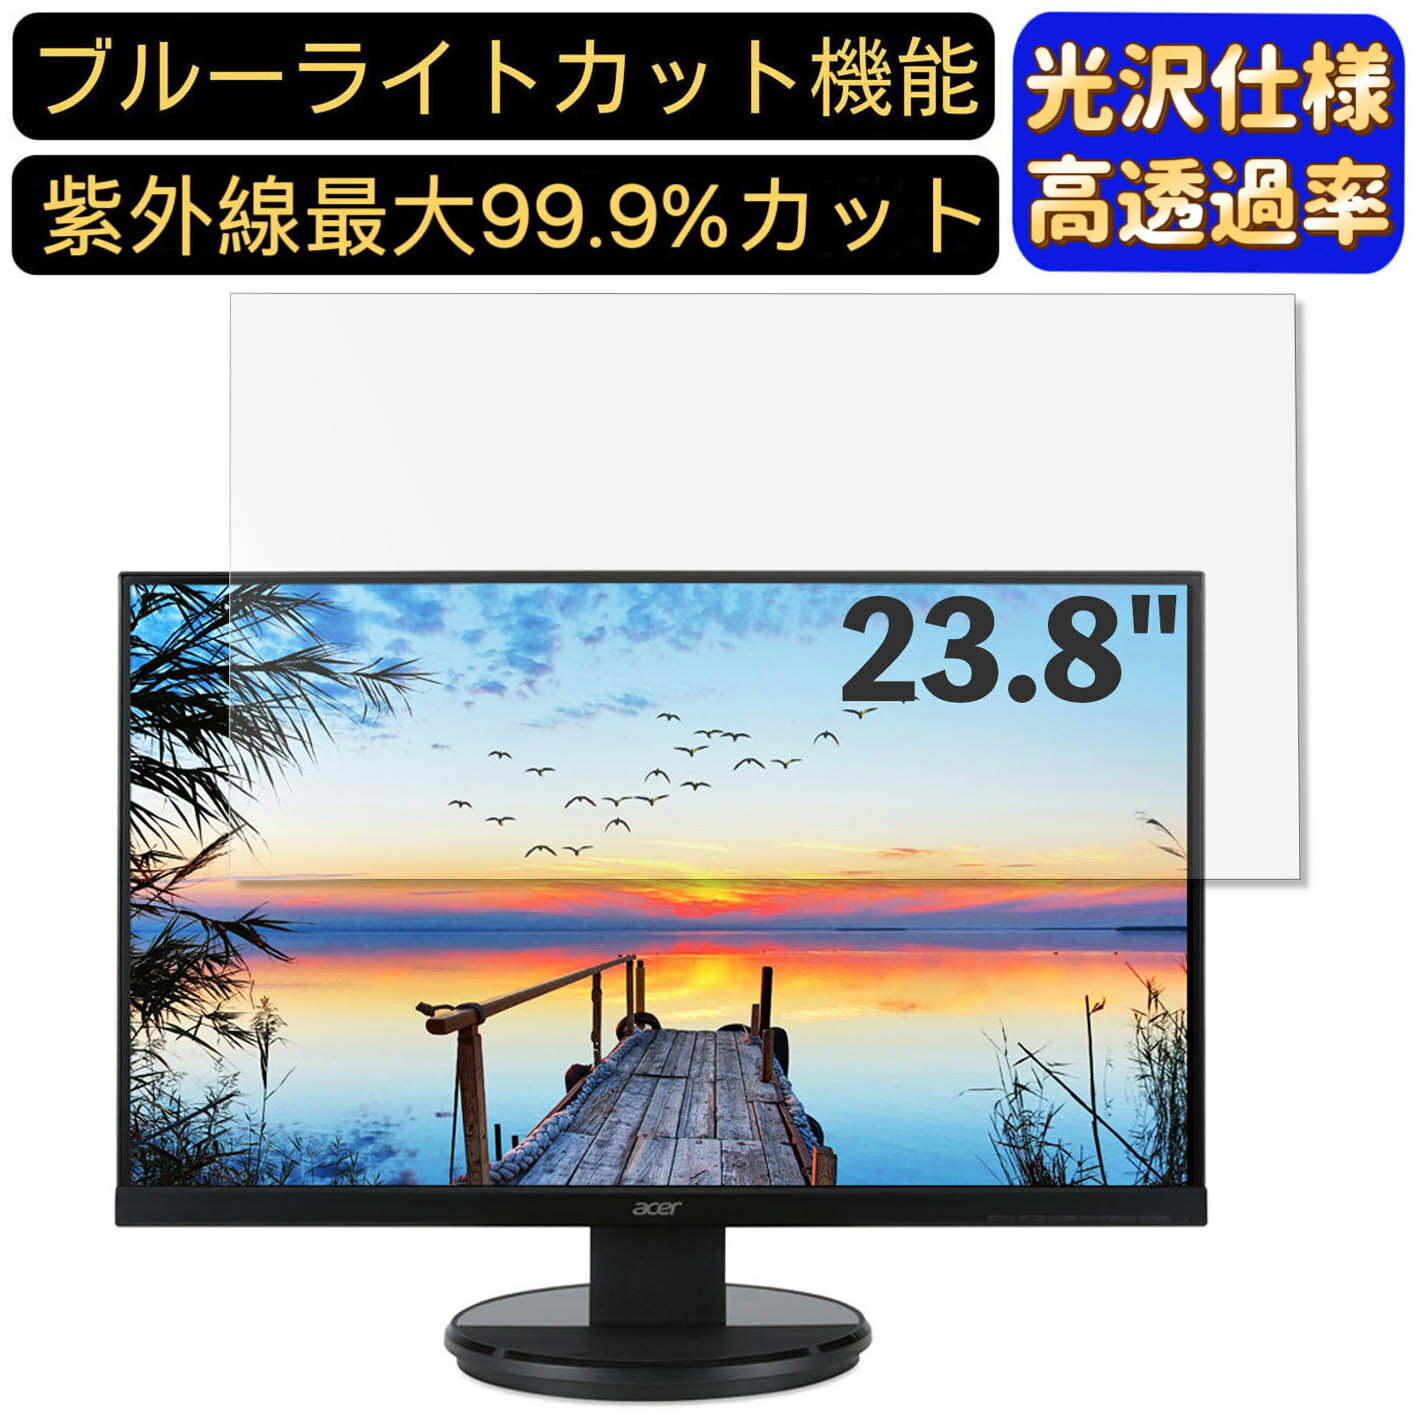 【ポイント2倍】Acer K242HYLbmid (K2) 23.8